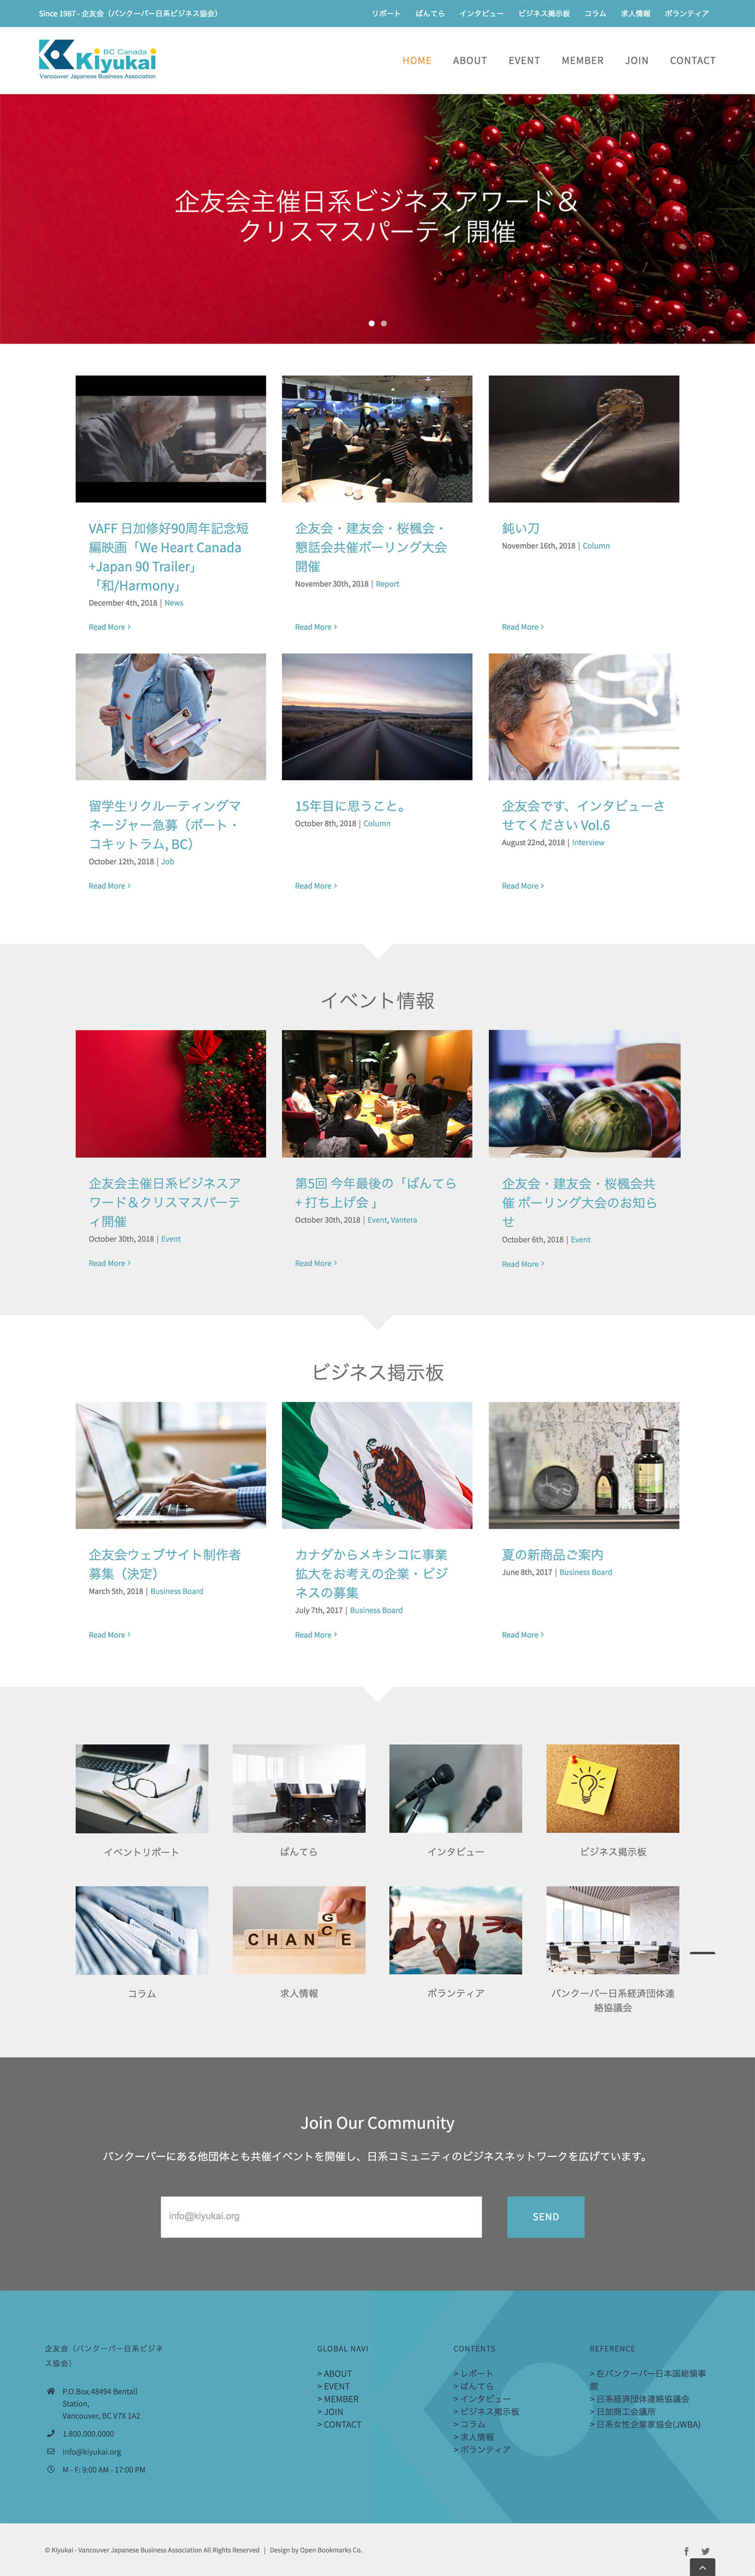 Kiyukai Website New